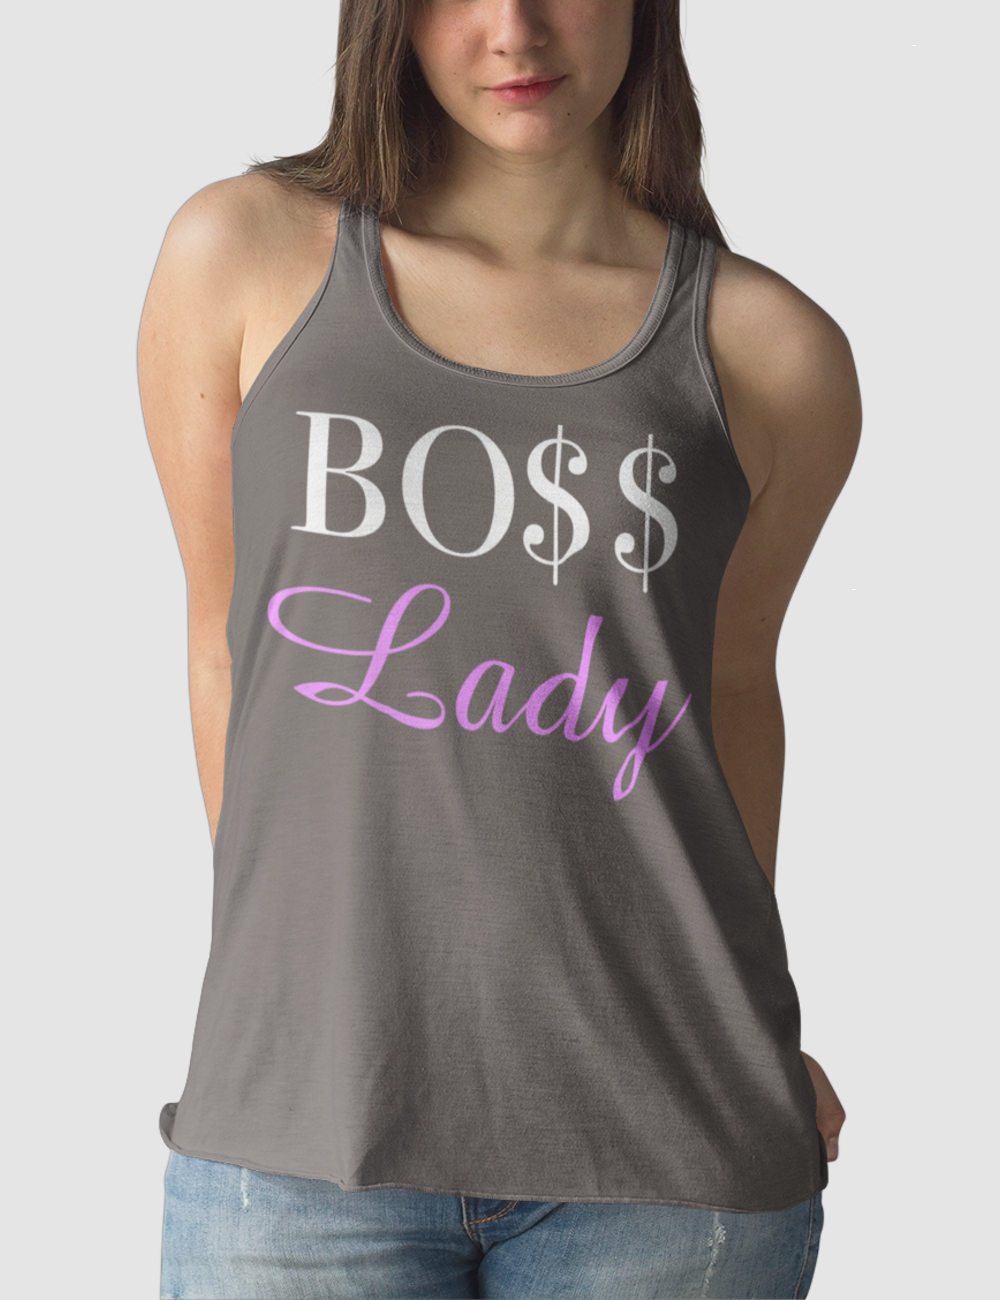 Boss Lady | Women's Cut Racerback Tank Top OniTakai